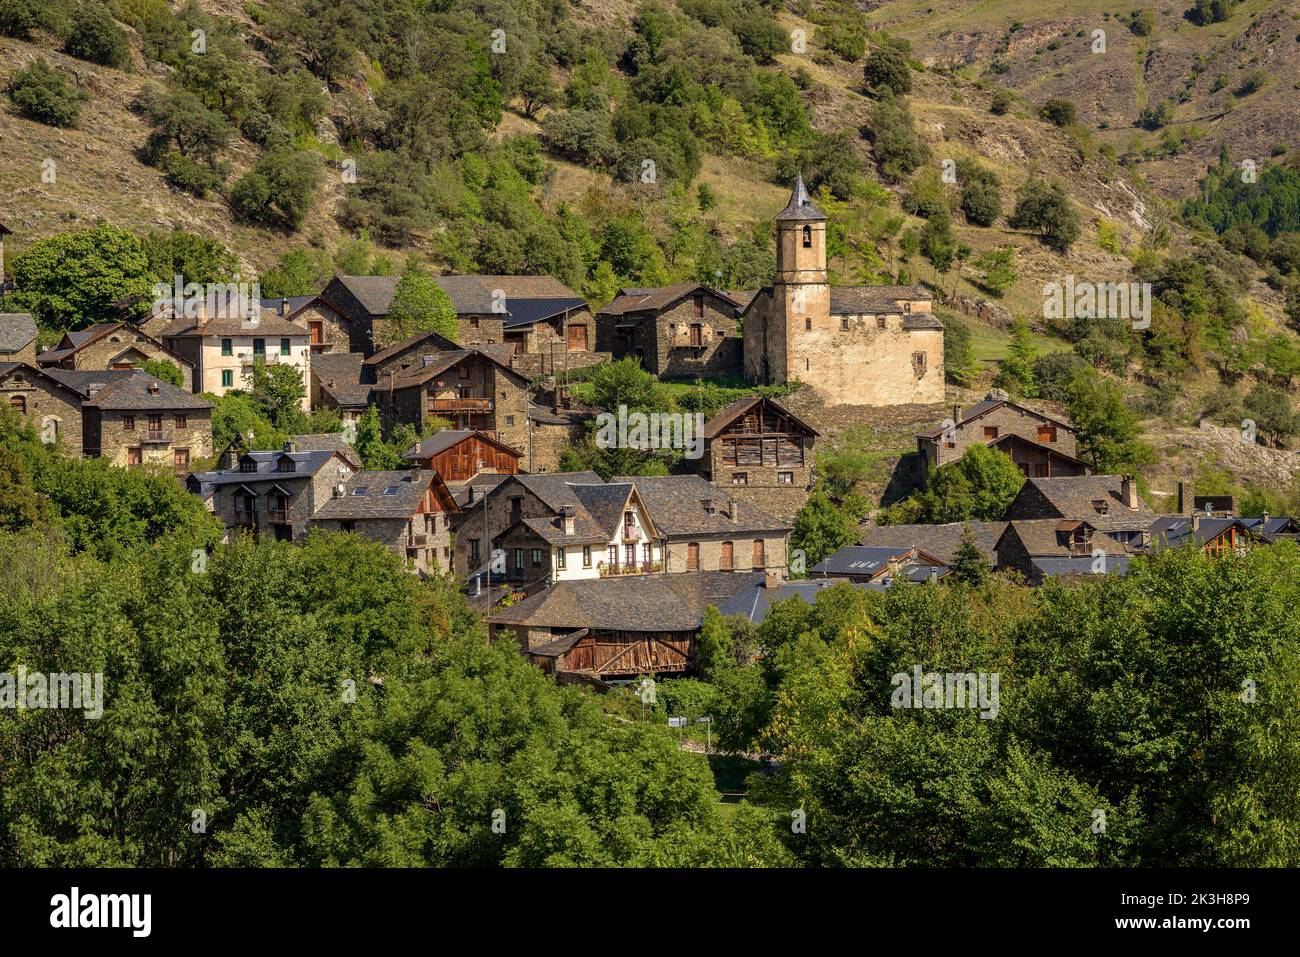 Dorf Lladrós im Cardós-Tal, mit einer grünen und frühlingshaften Umgebung am Ende des Sommers (Pallars Sobirà Lleida Katalonien Spanien Pyrenäen) Stockfoto